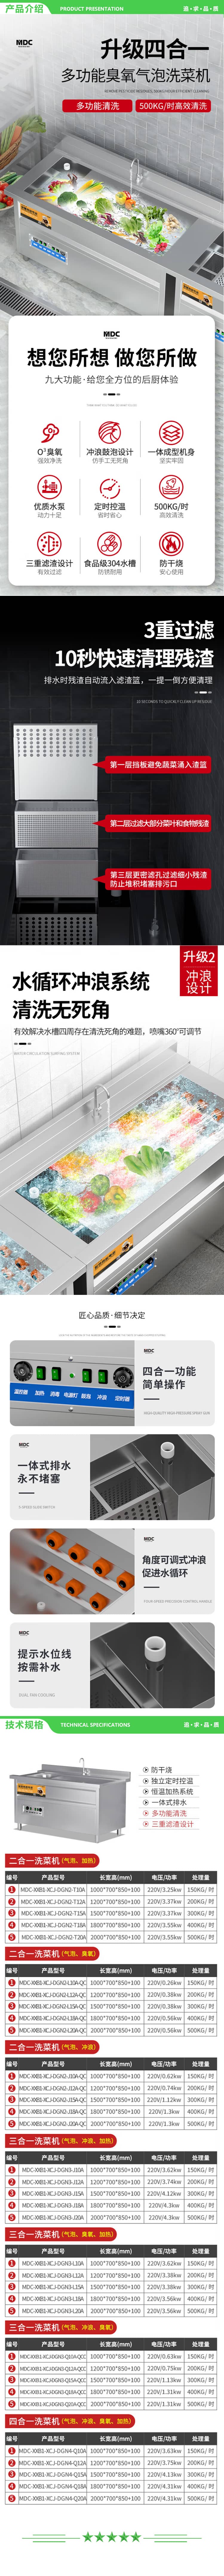 麦大厨 MDC-XXB1-XCJ-DGN2-J12A-QC 商用洗菜机全自动多功能涡流气泡冲浪式食堂果蔬清洗机 2.jpg